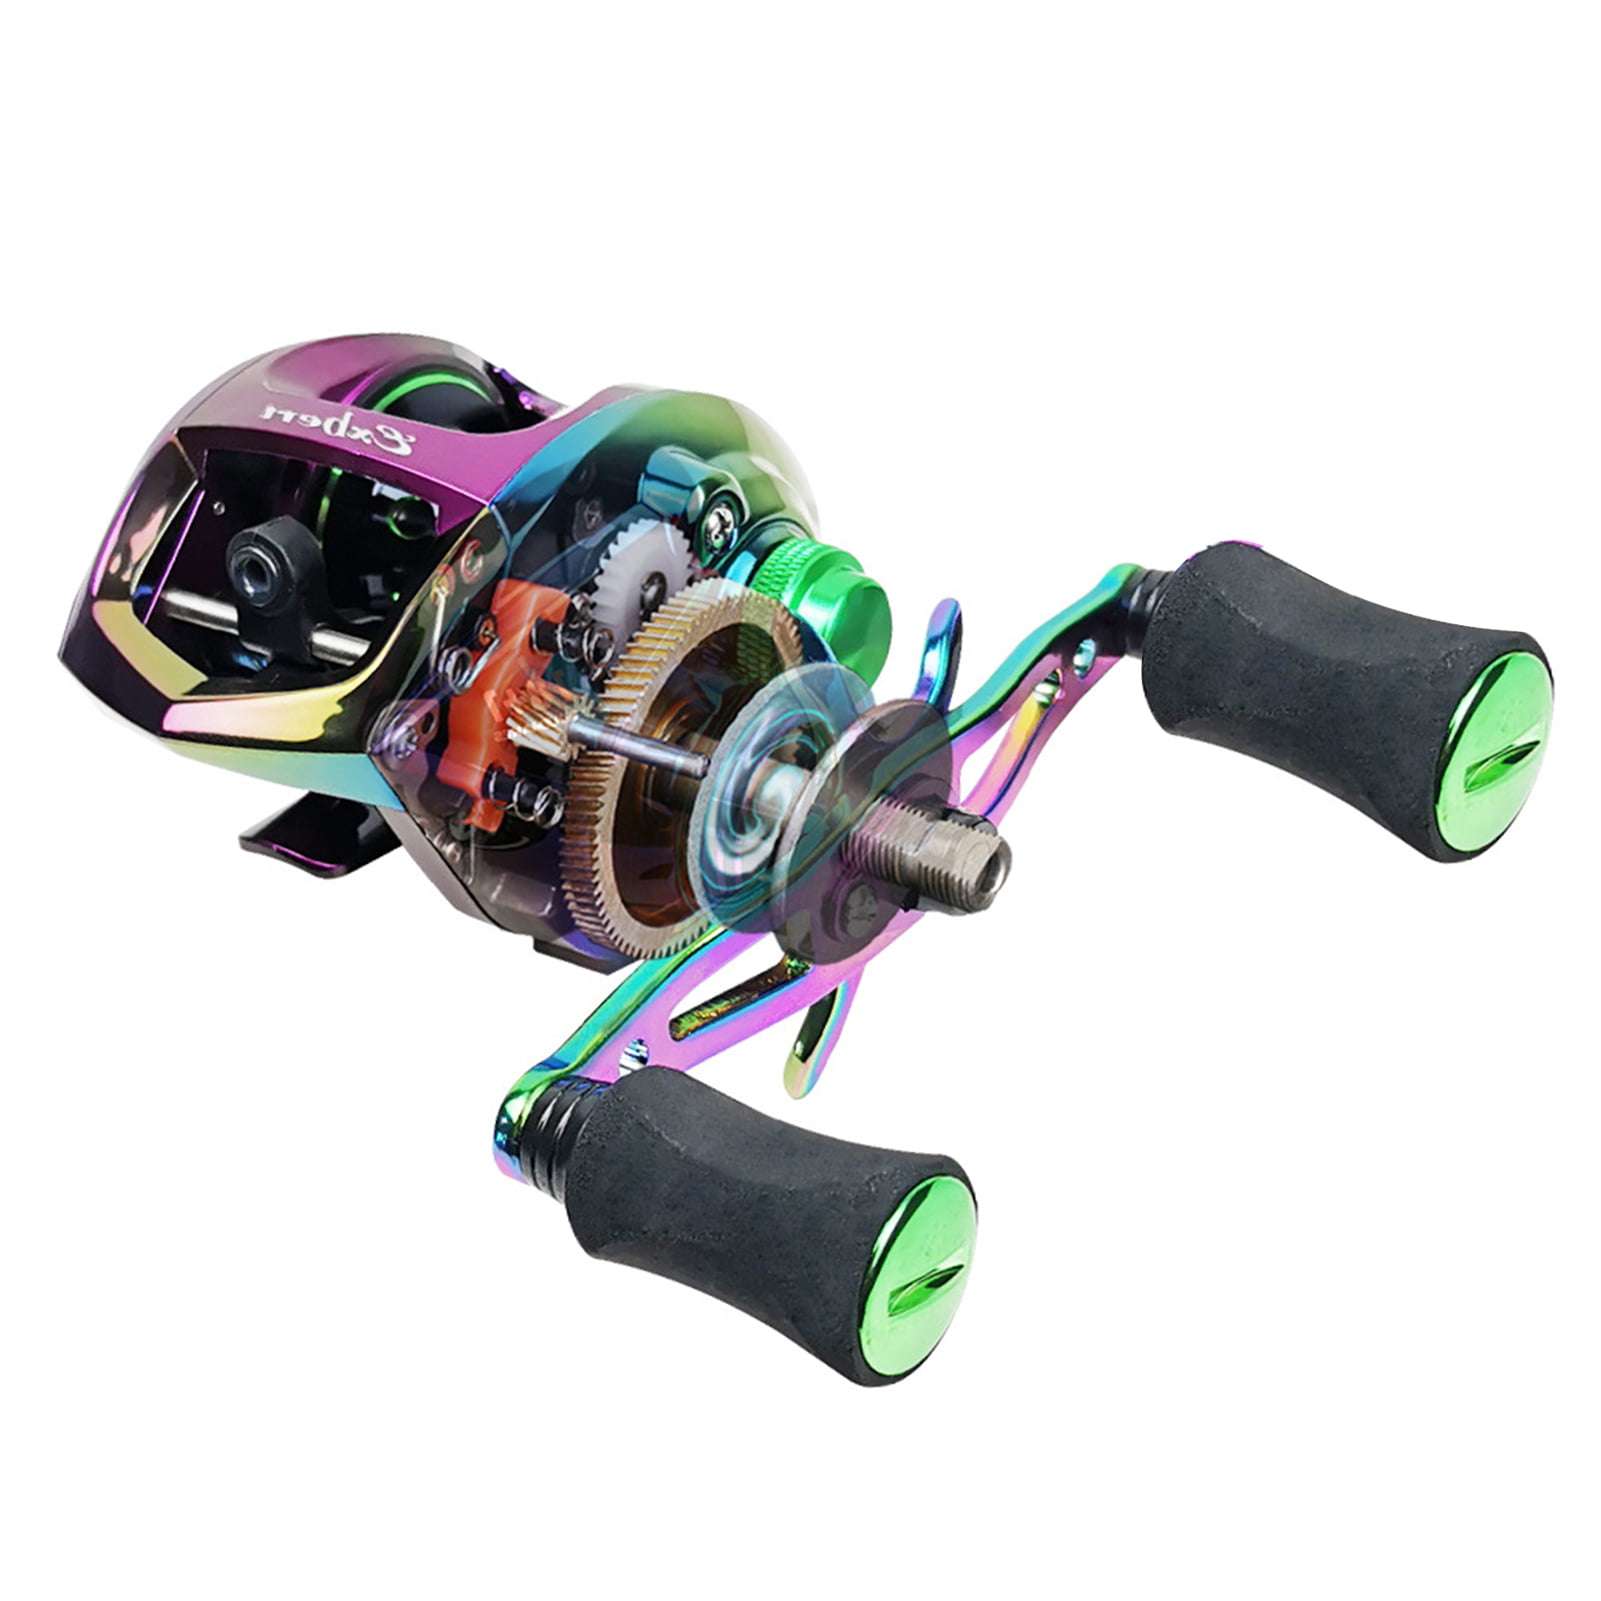 Exbert Carbon Fiber Baitcasting Reel 9+1bb Fishing Reel High Speed 6.3: 1 Gear Ratio Magnetic Brake System Baitcaster Reel For Left Hand Left